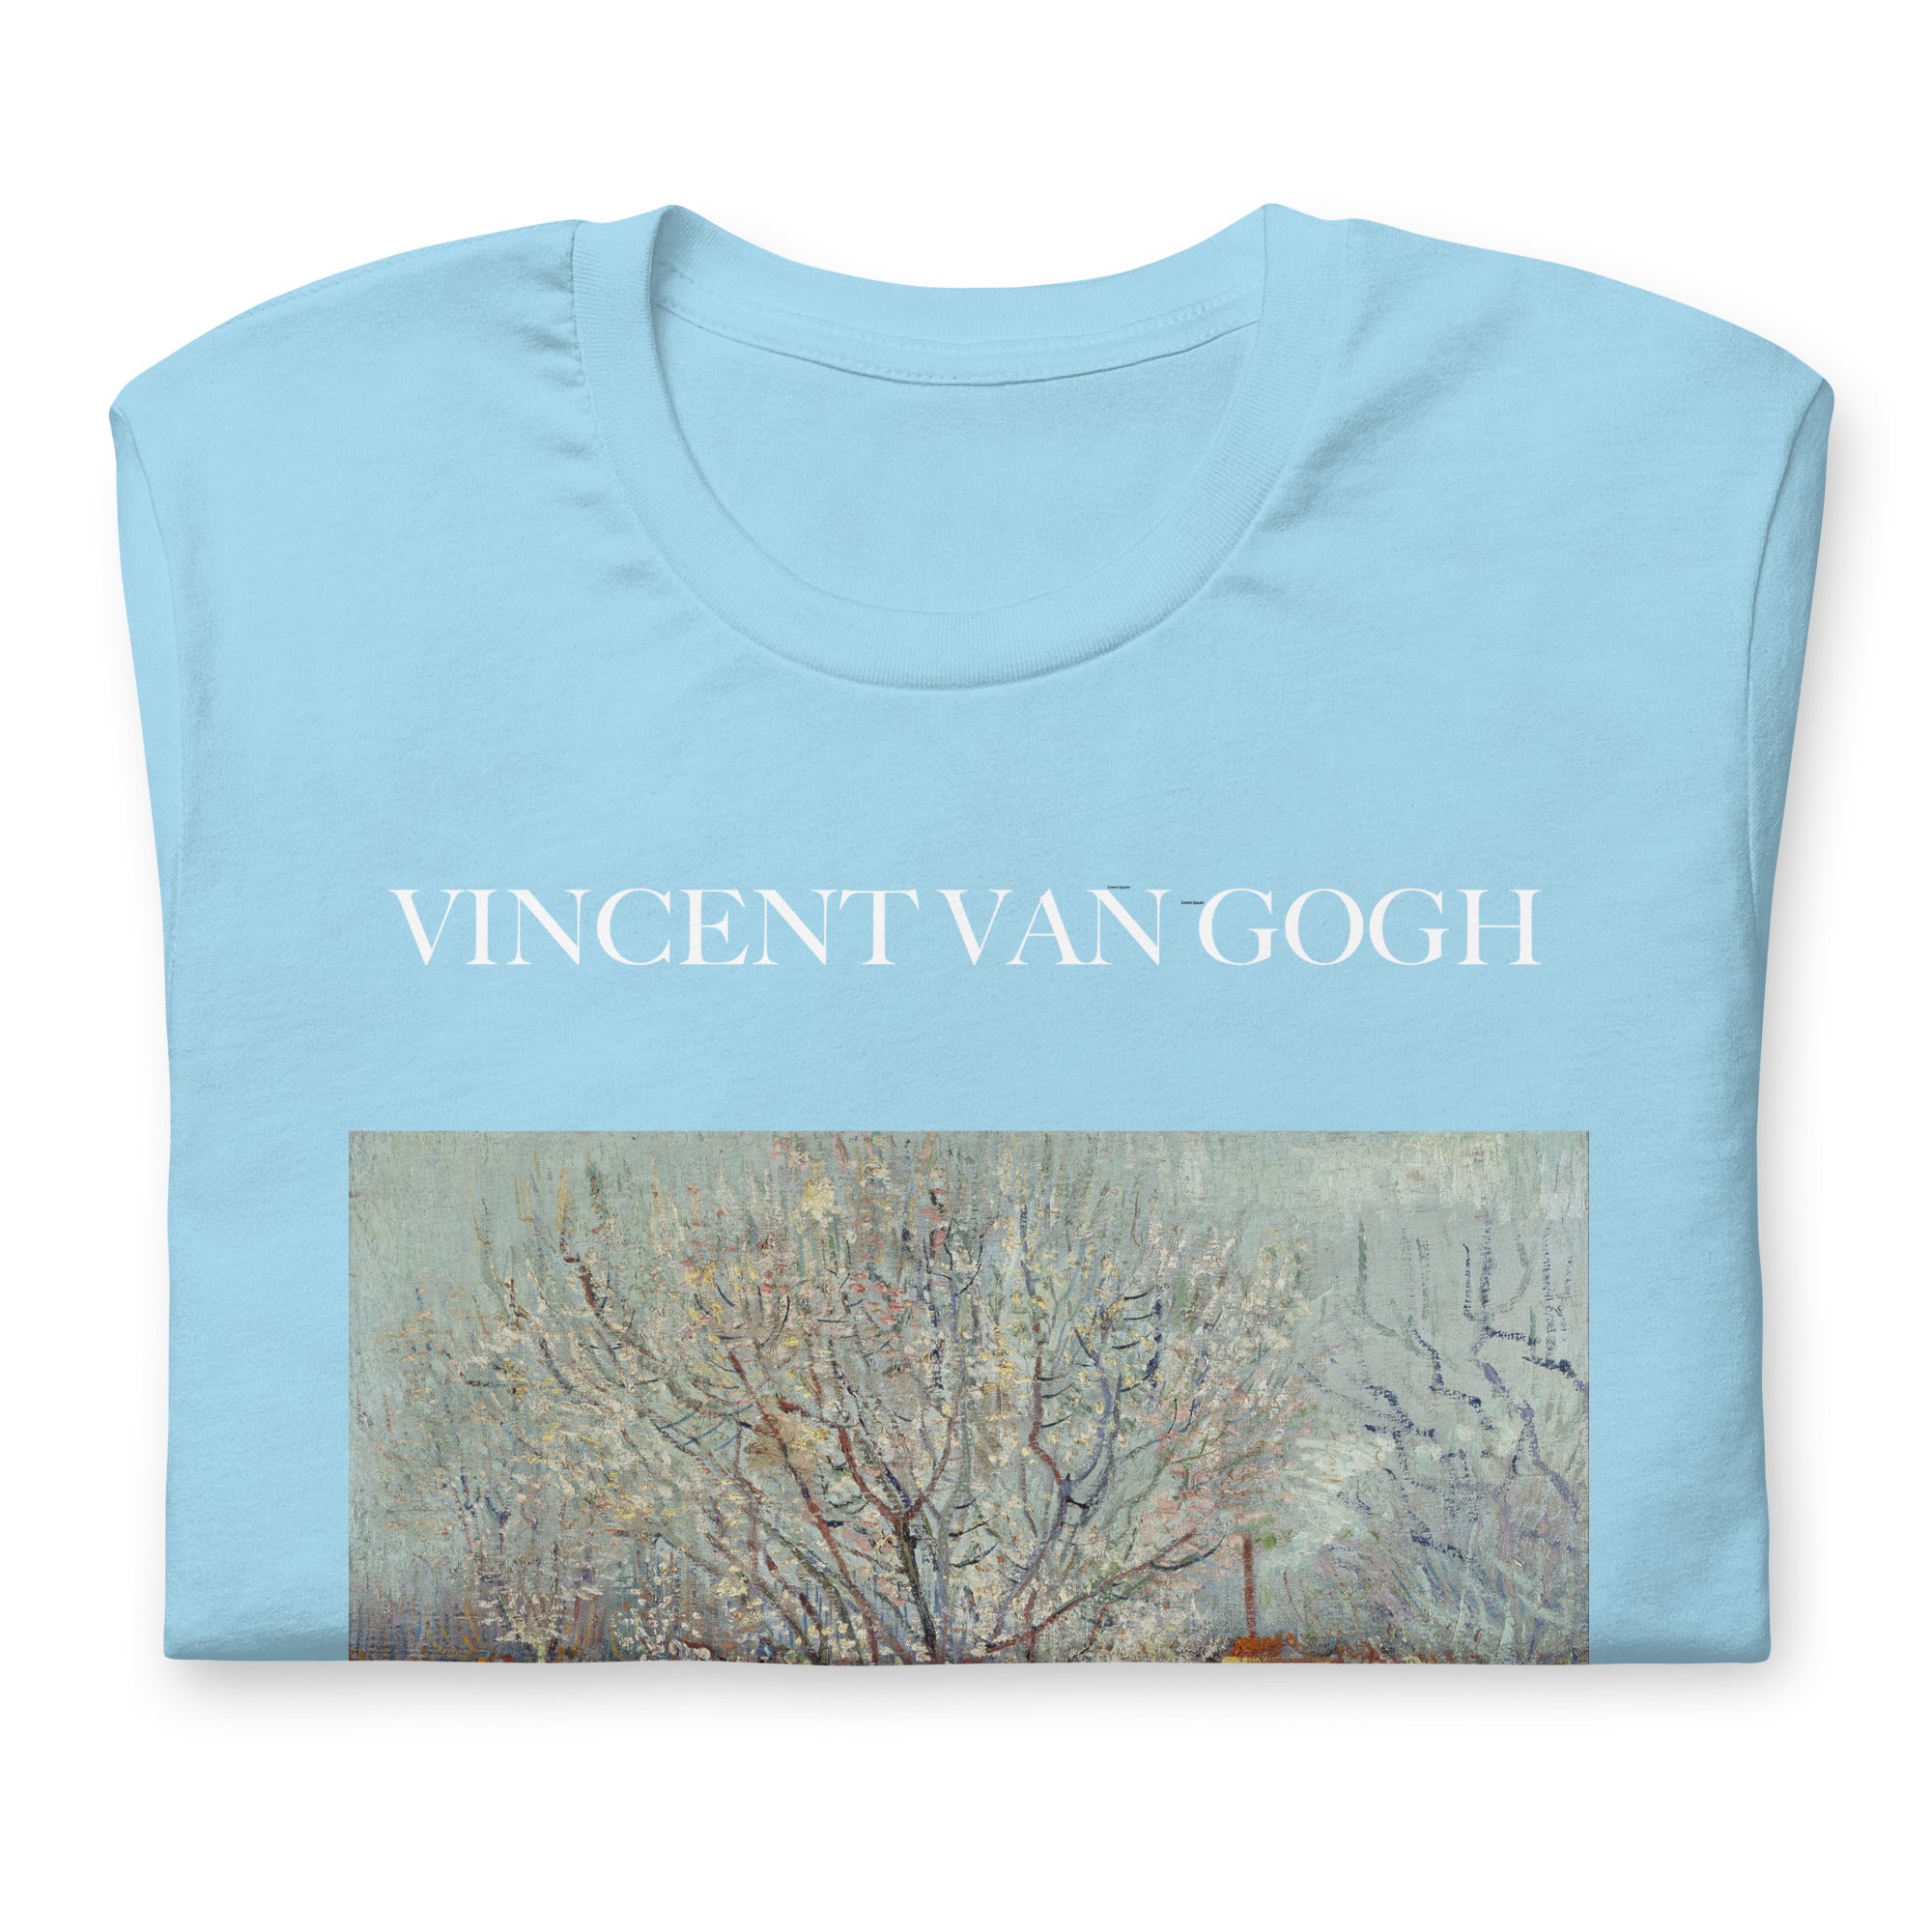 T-Shirt mit berühmtem Gemälde „Obstgarten in Blüte“ von Vincent van Gogh | Unisex-T-Shirt im klassischen Kunststil